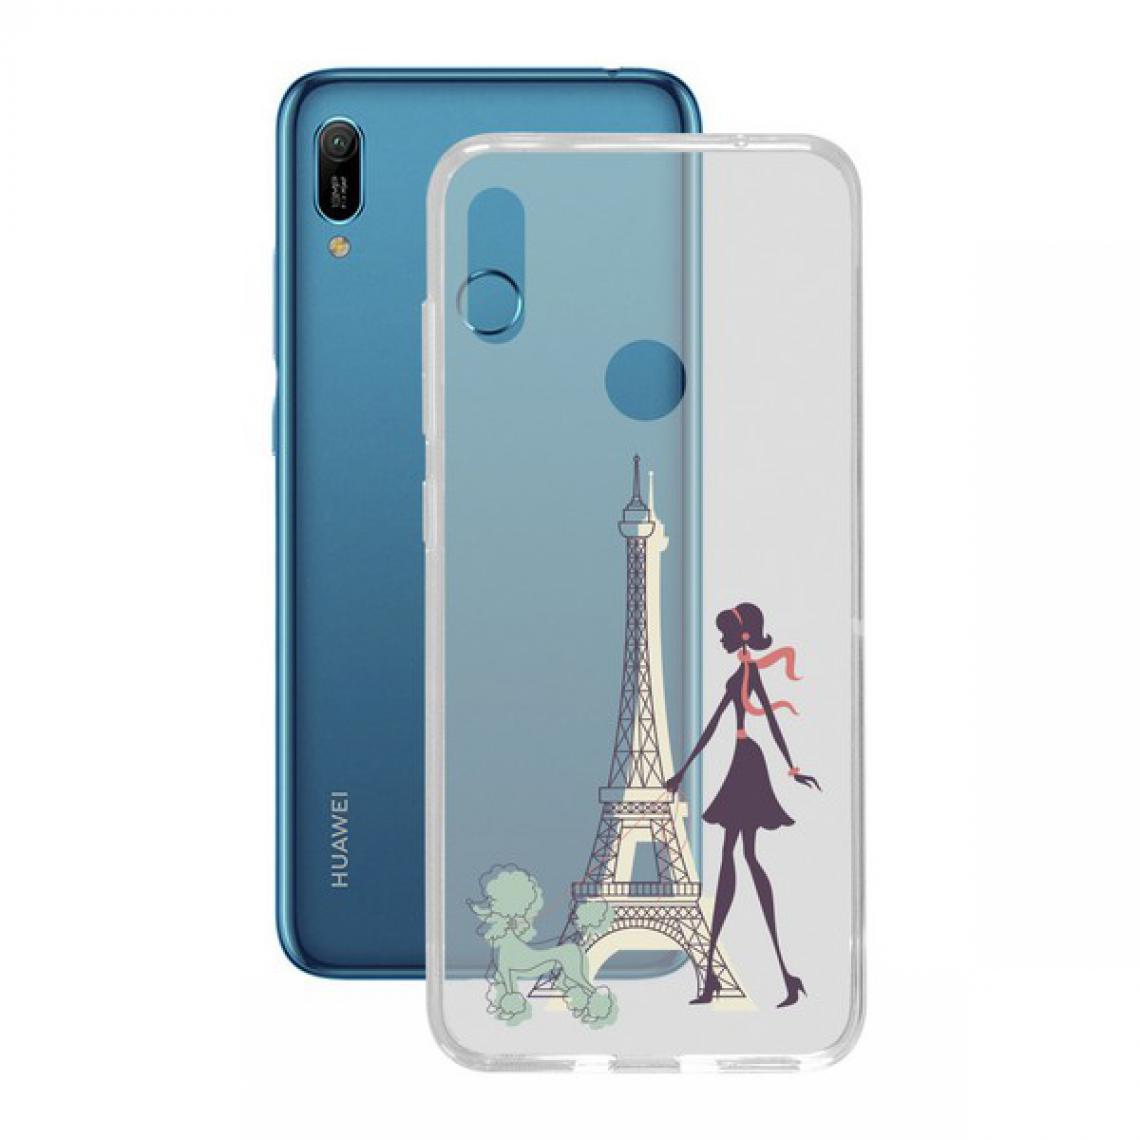 Uknow - Protection pour téléphone portable Huawei Y6 2019 Contact Flex France TPU - Coque, étui smartphone